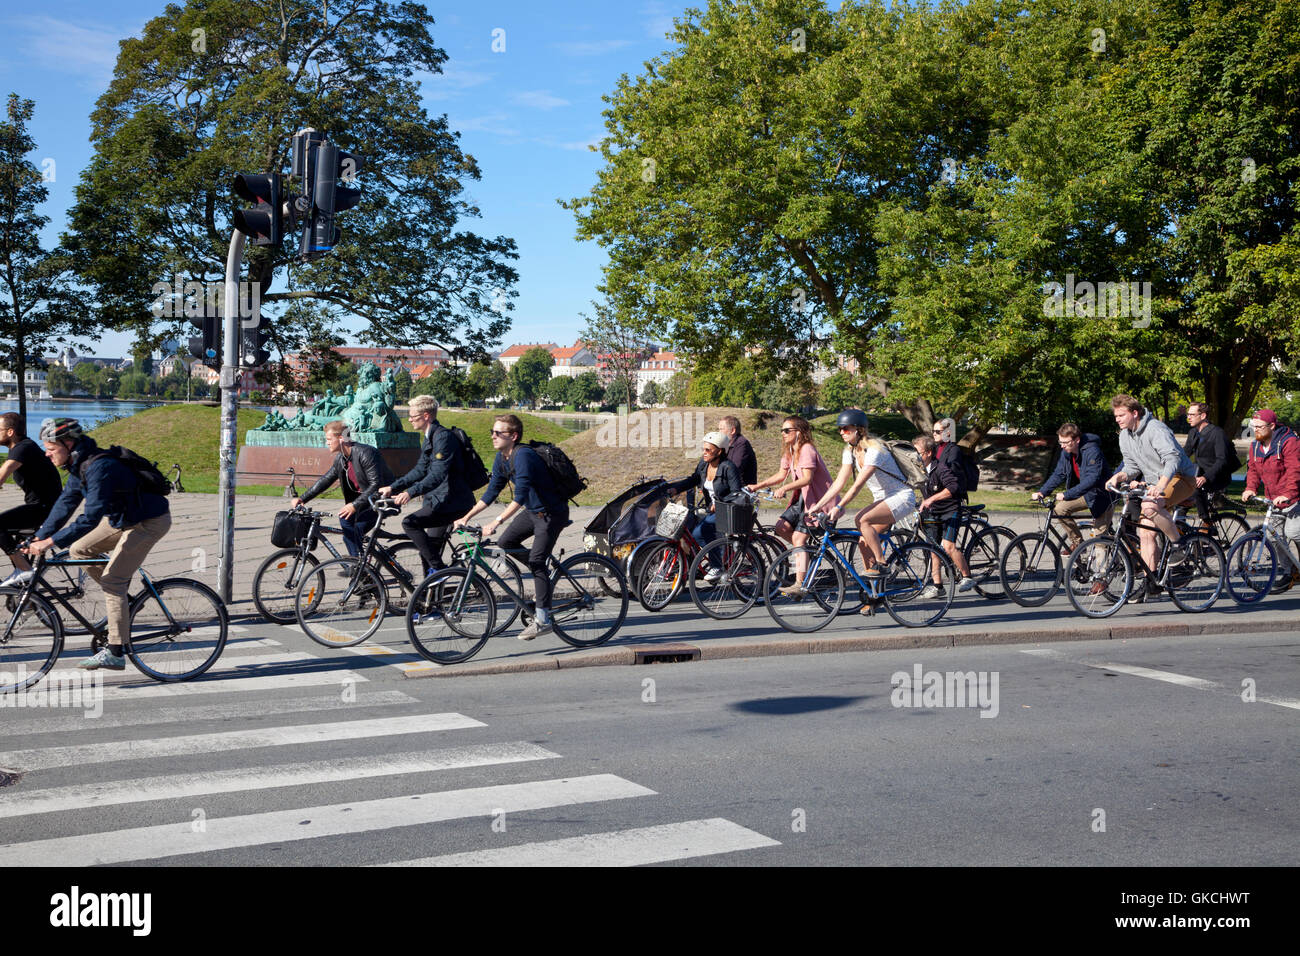 En fin de matinée d'été sur la pointe de vélo piste cyclable au achalandés les lacs, Frederiksborggade, Søtorvet, vers le centre de Copenhague, Danemark Banque D'Images